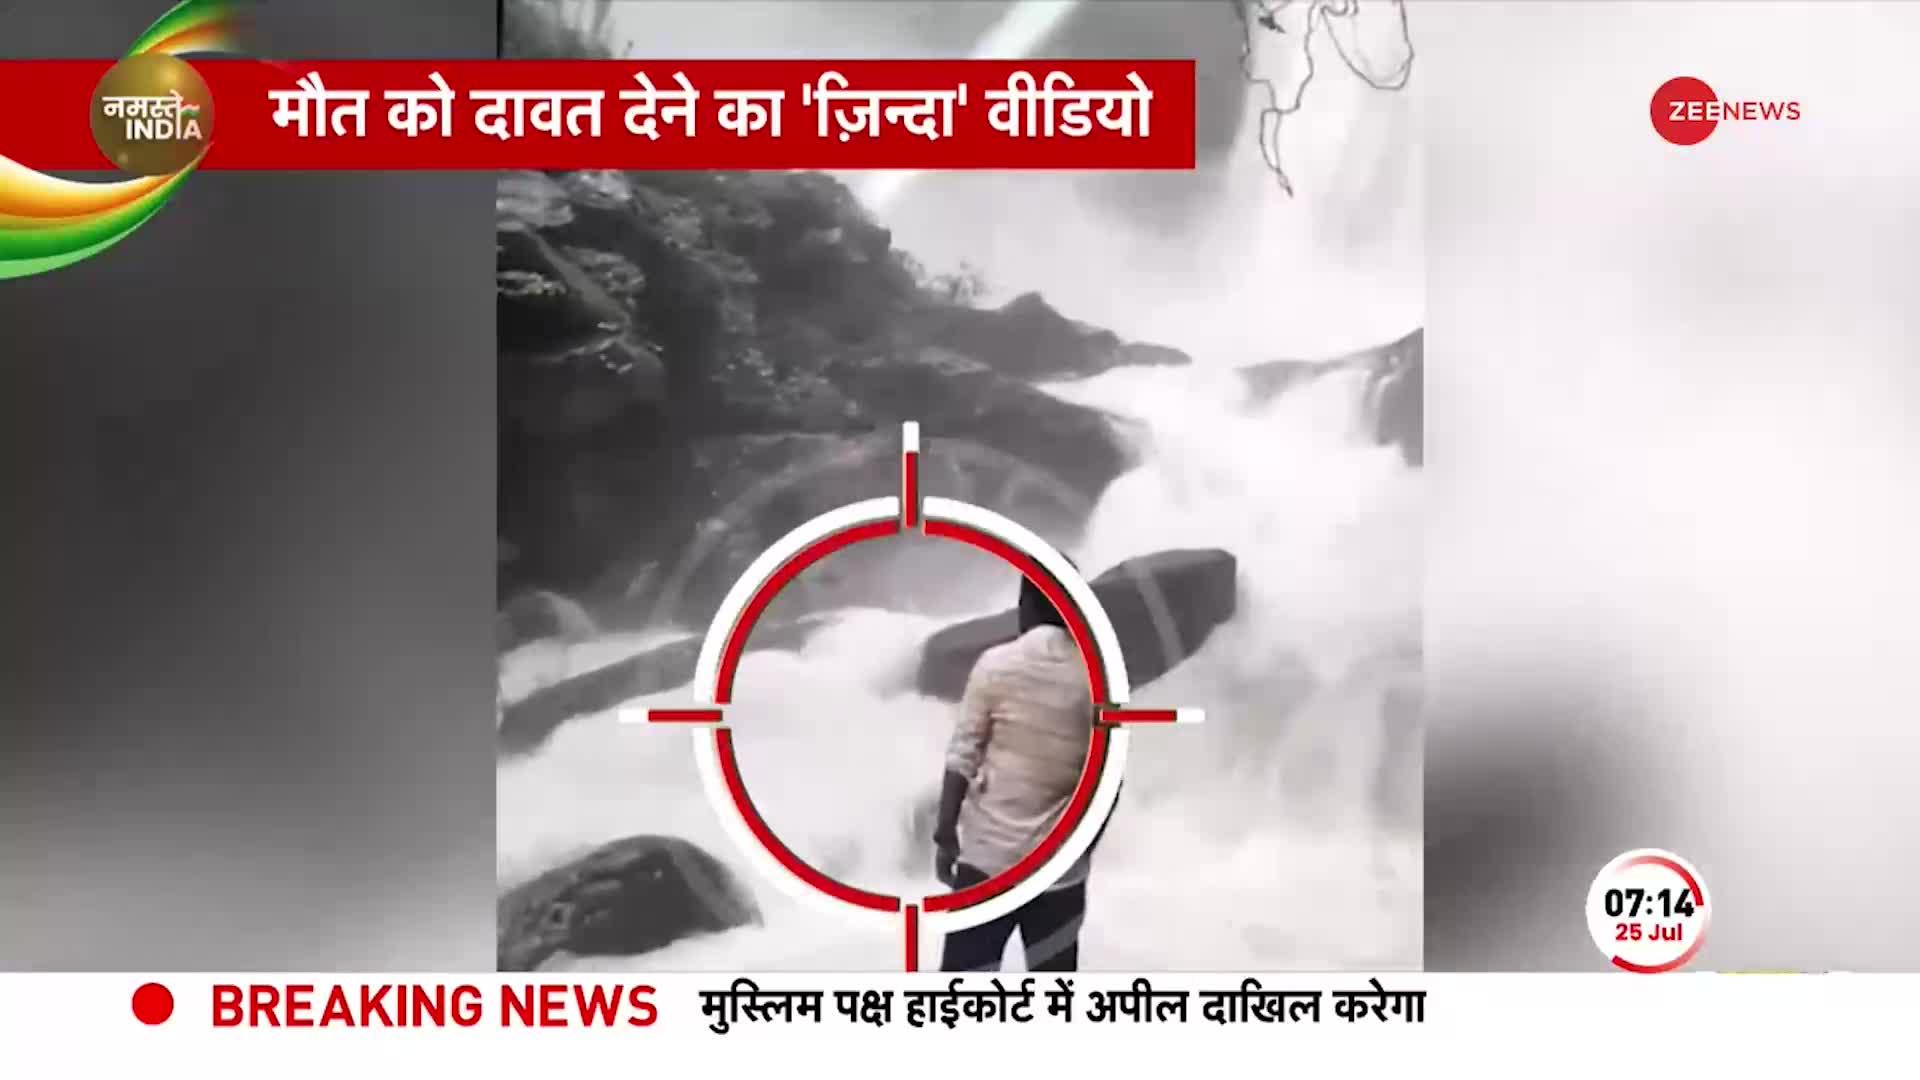 Arishina Gundi Falls Death: Karnataka में रील बनाने के चक्कर में 23 साल के युवक ने गवाई जान